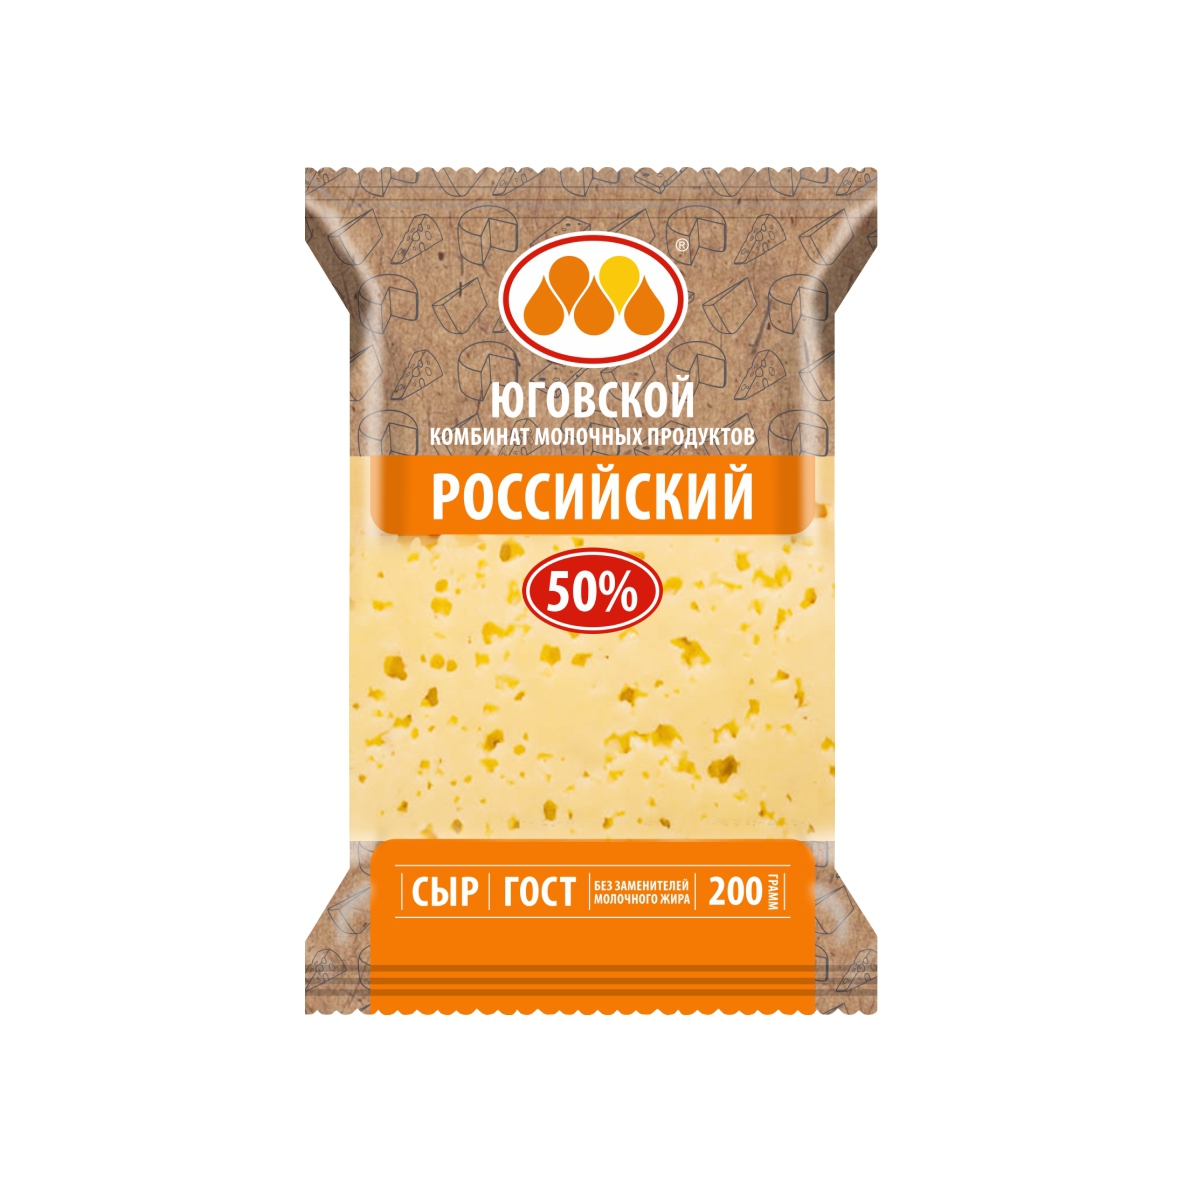 Сыр Российский мдж 50% Юговской КМП (шт)